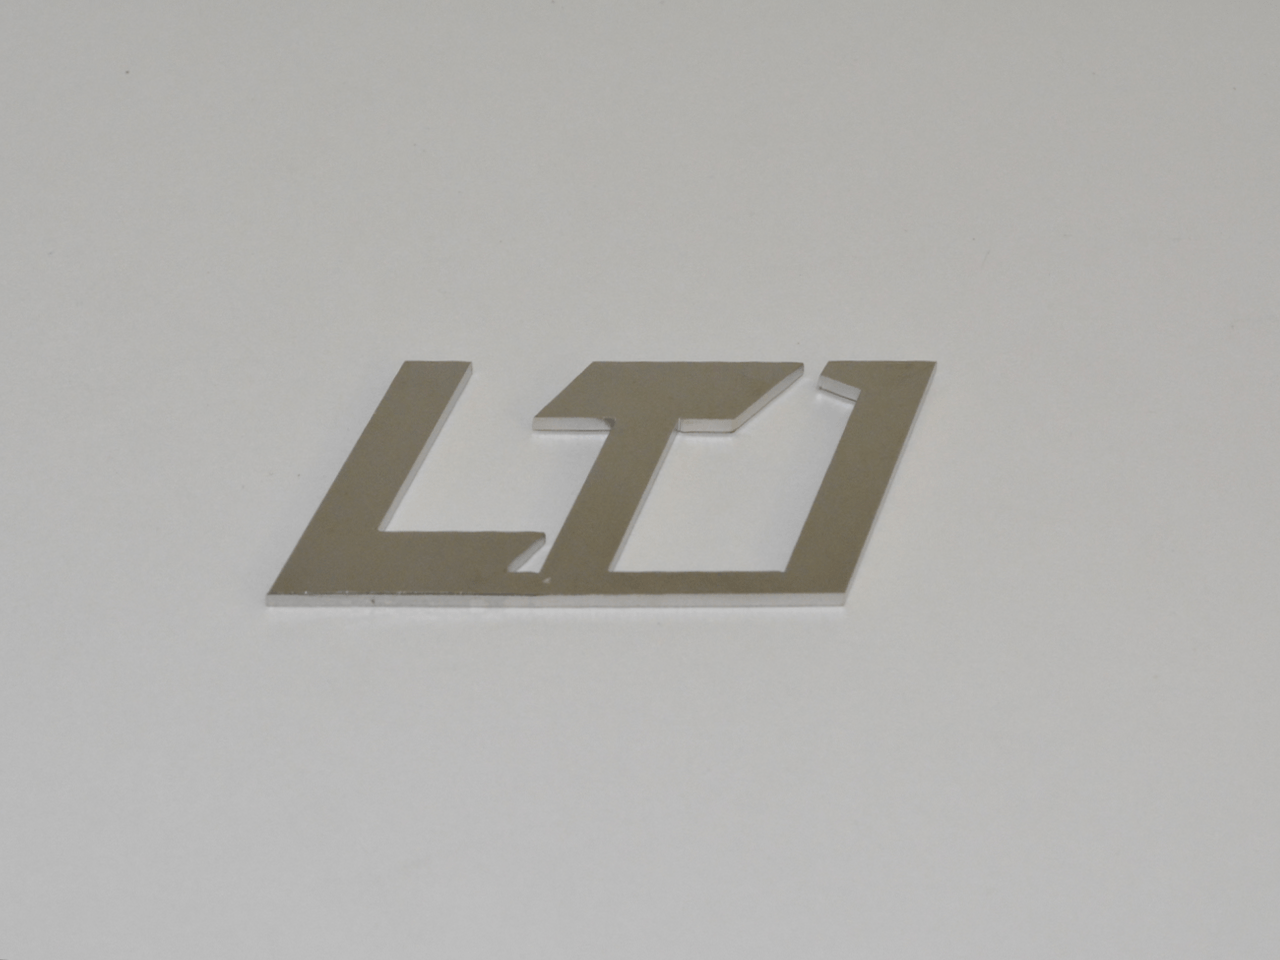 LT1 Emblem; - MorrisClassic.com, emblem